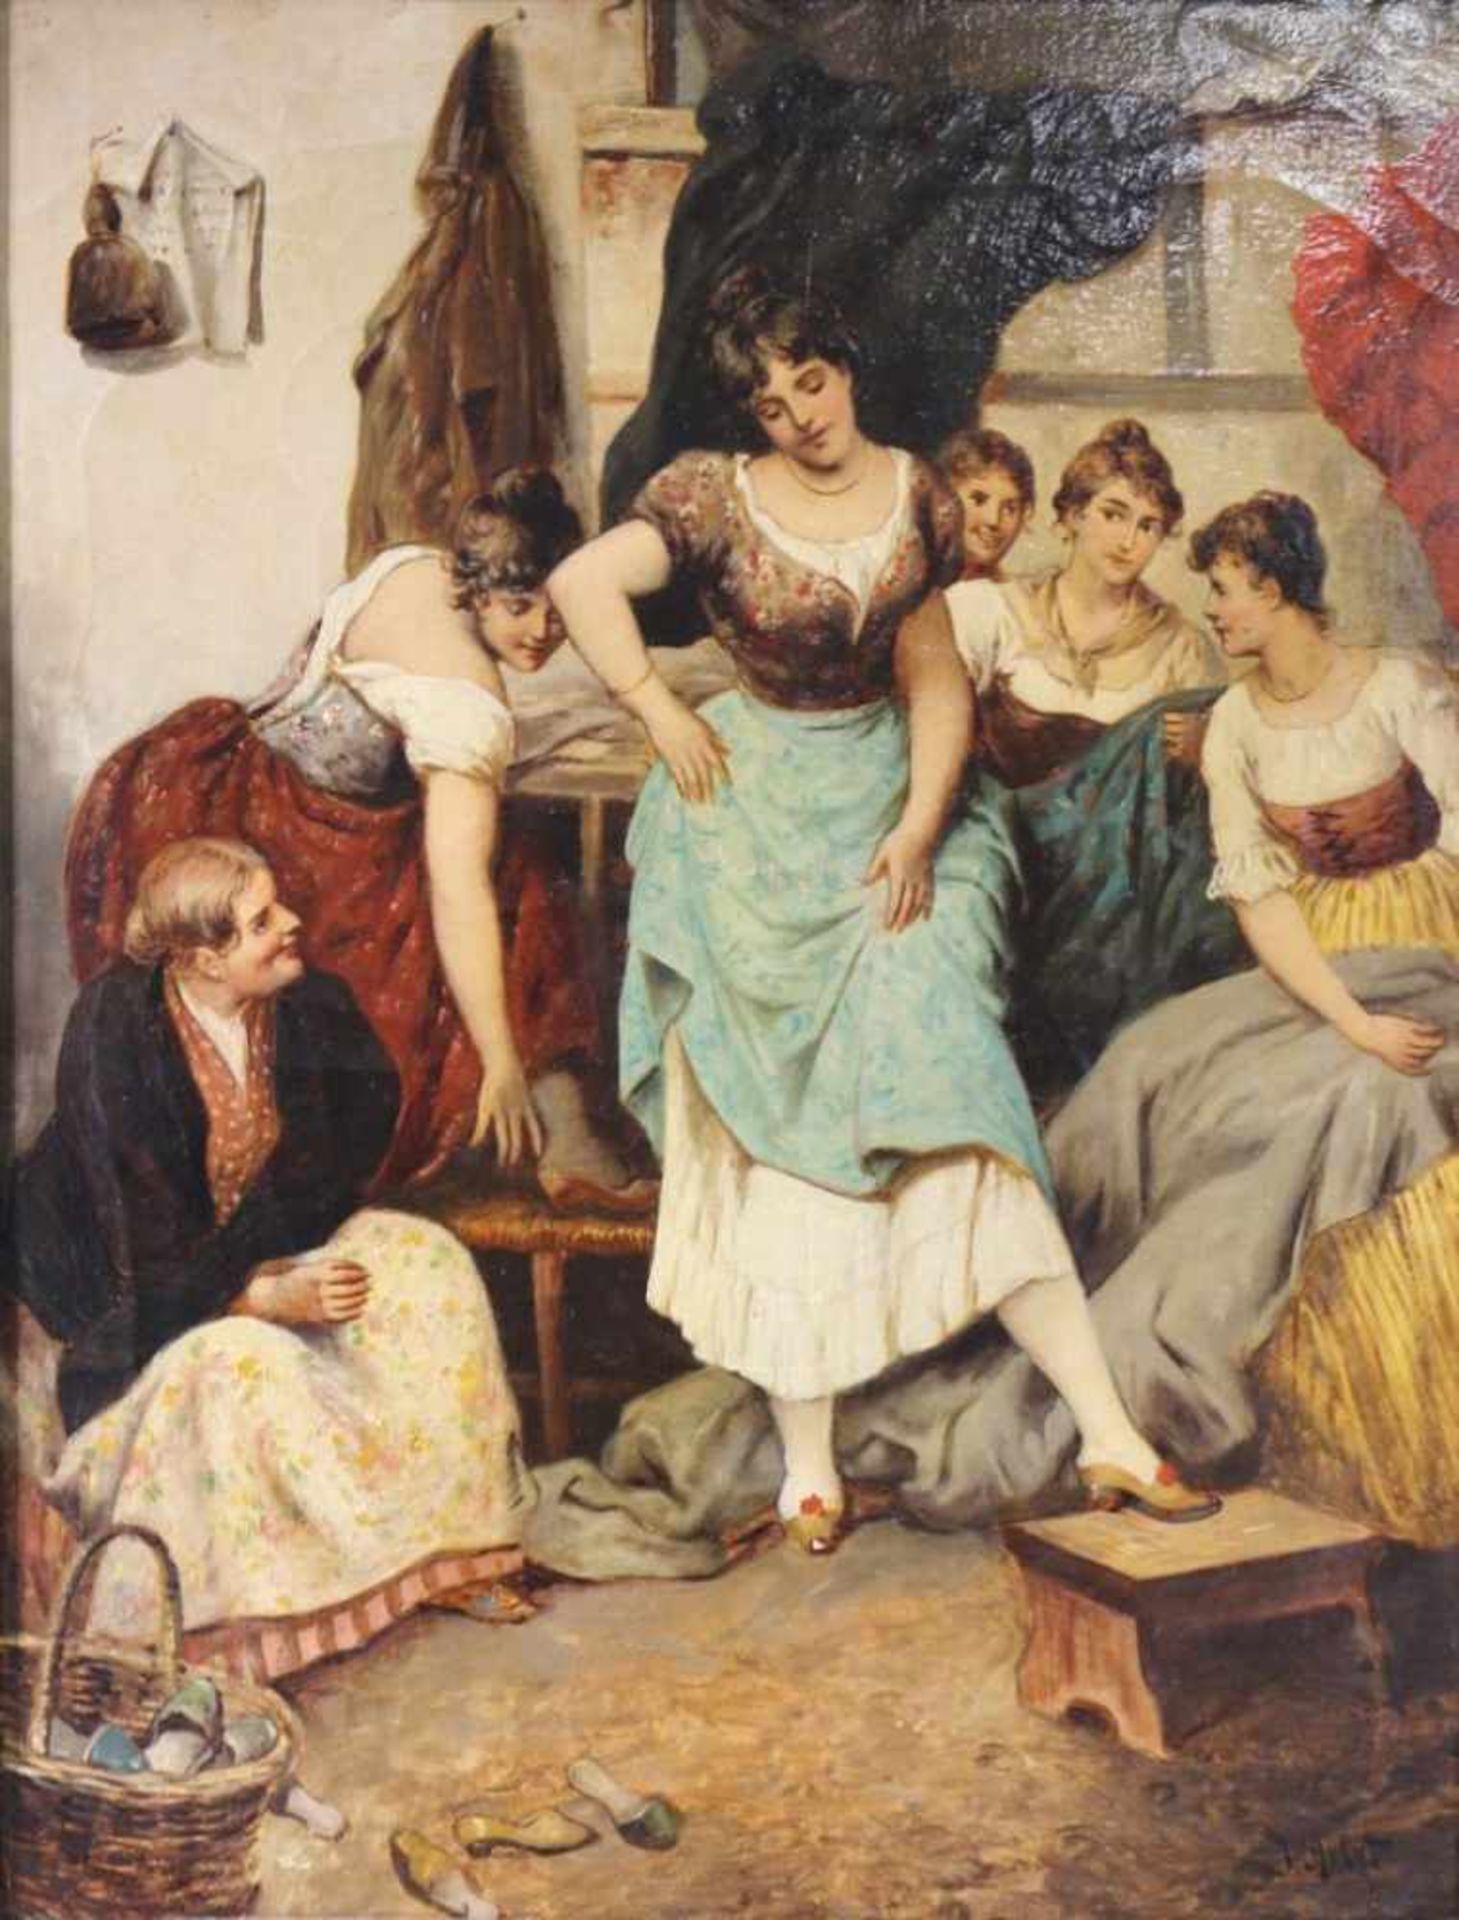 J. ARLET, Maler des 19. Jh. "Die neuen Schuhe", junge Damen bei der Anprobe, Öl auf Leinwand.